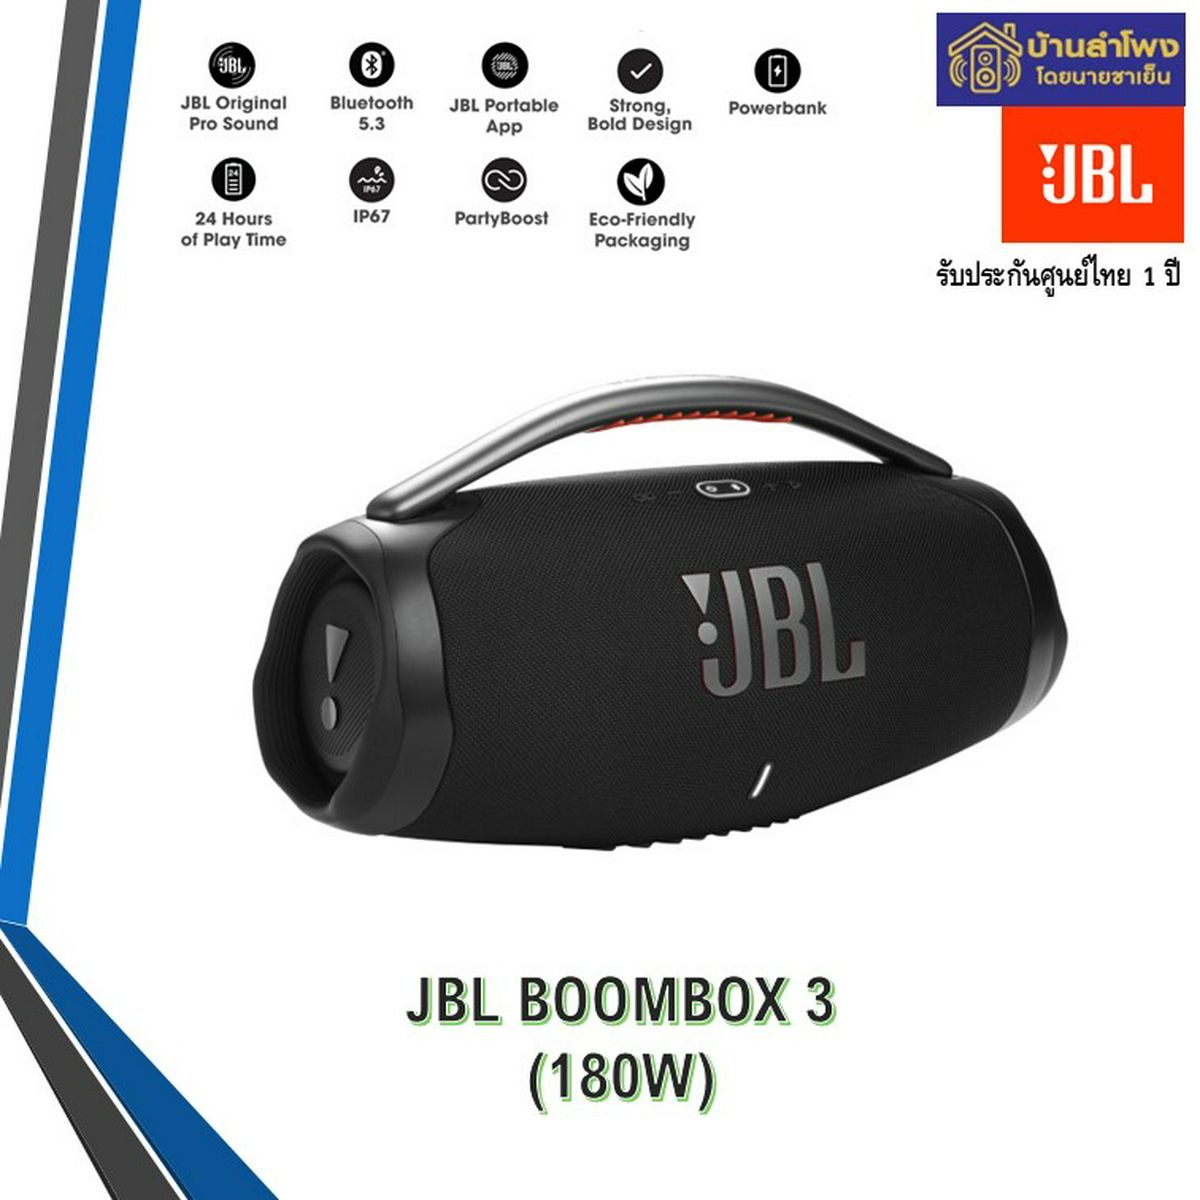 BOOMBOX 3 WI-FI ลำโพงพกพา JBL